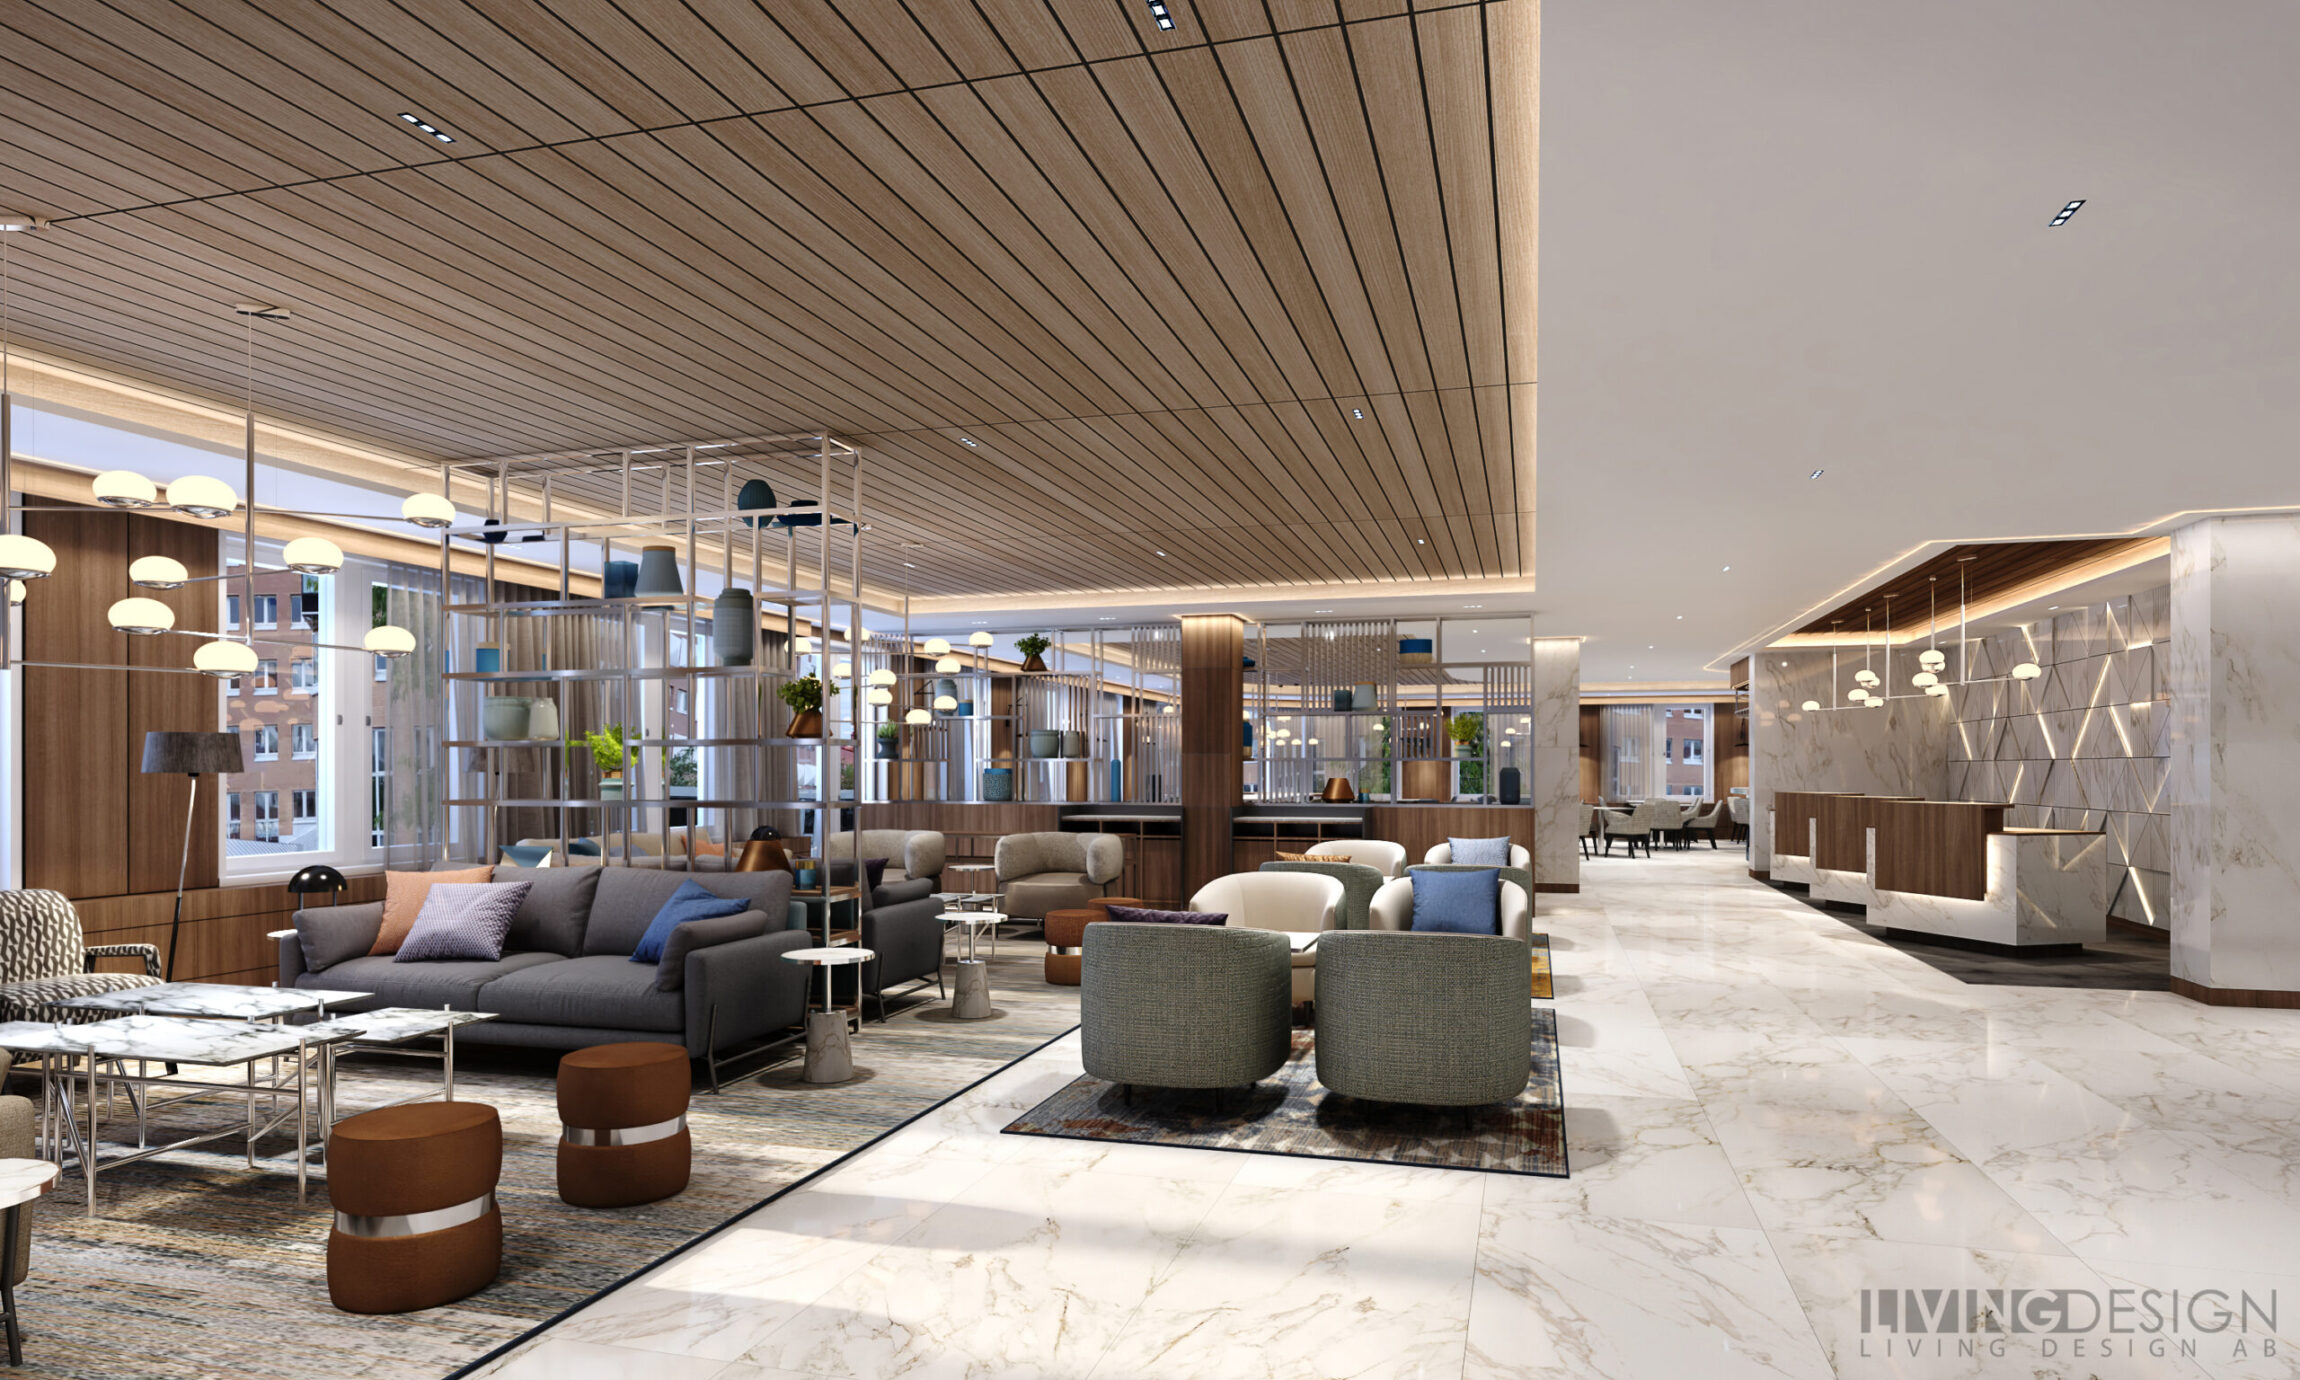 AC Hotels by Marriott öppnar i Nordic Forum, ombyggnation startar hösten 2021